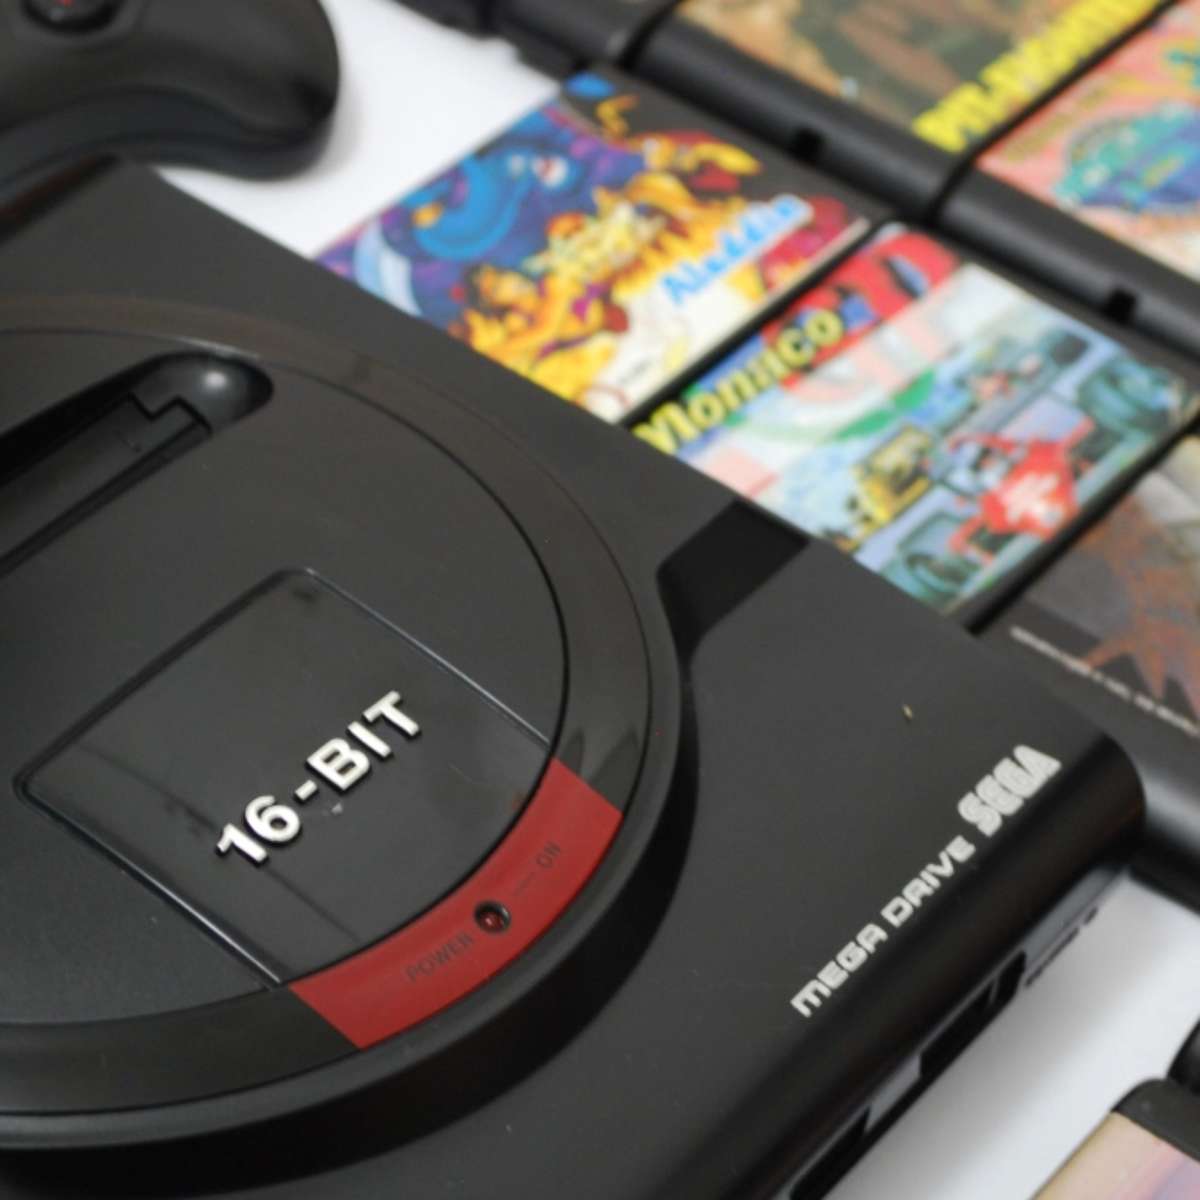 Lista traz os melhores jogos de Mega Drive para iOS e Android